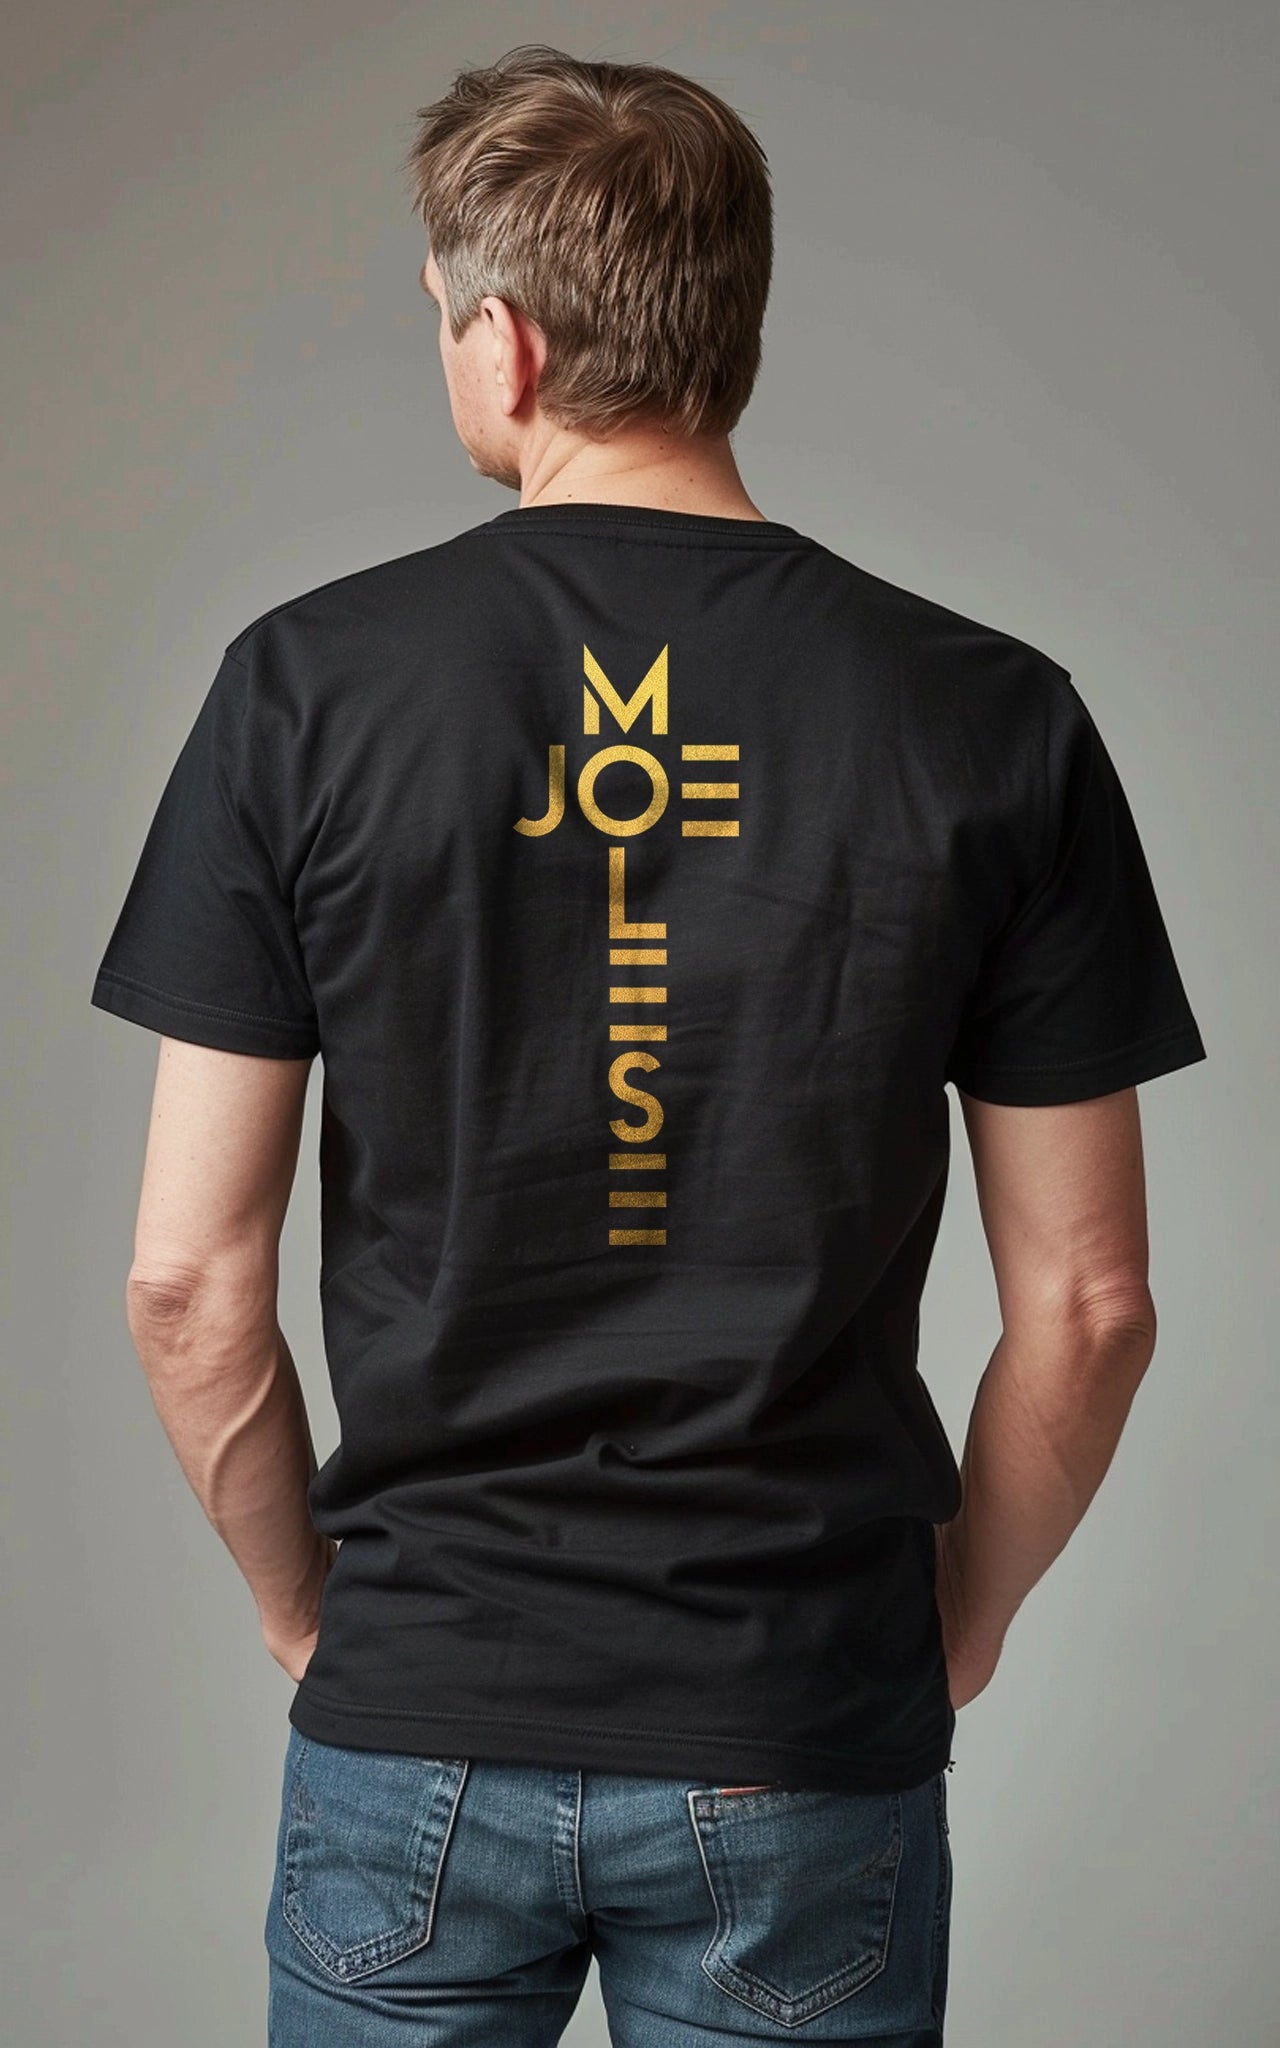 joe molese cross logo tee gold T-Shirt - Schwarz